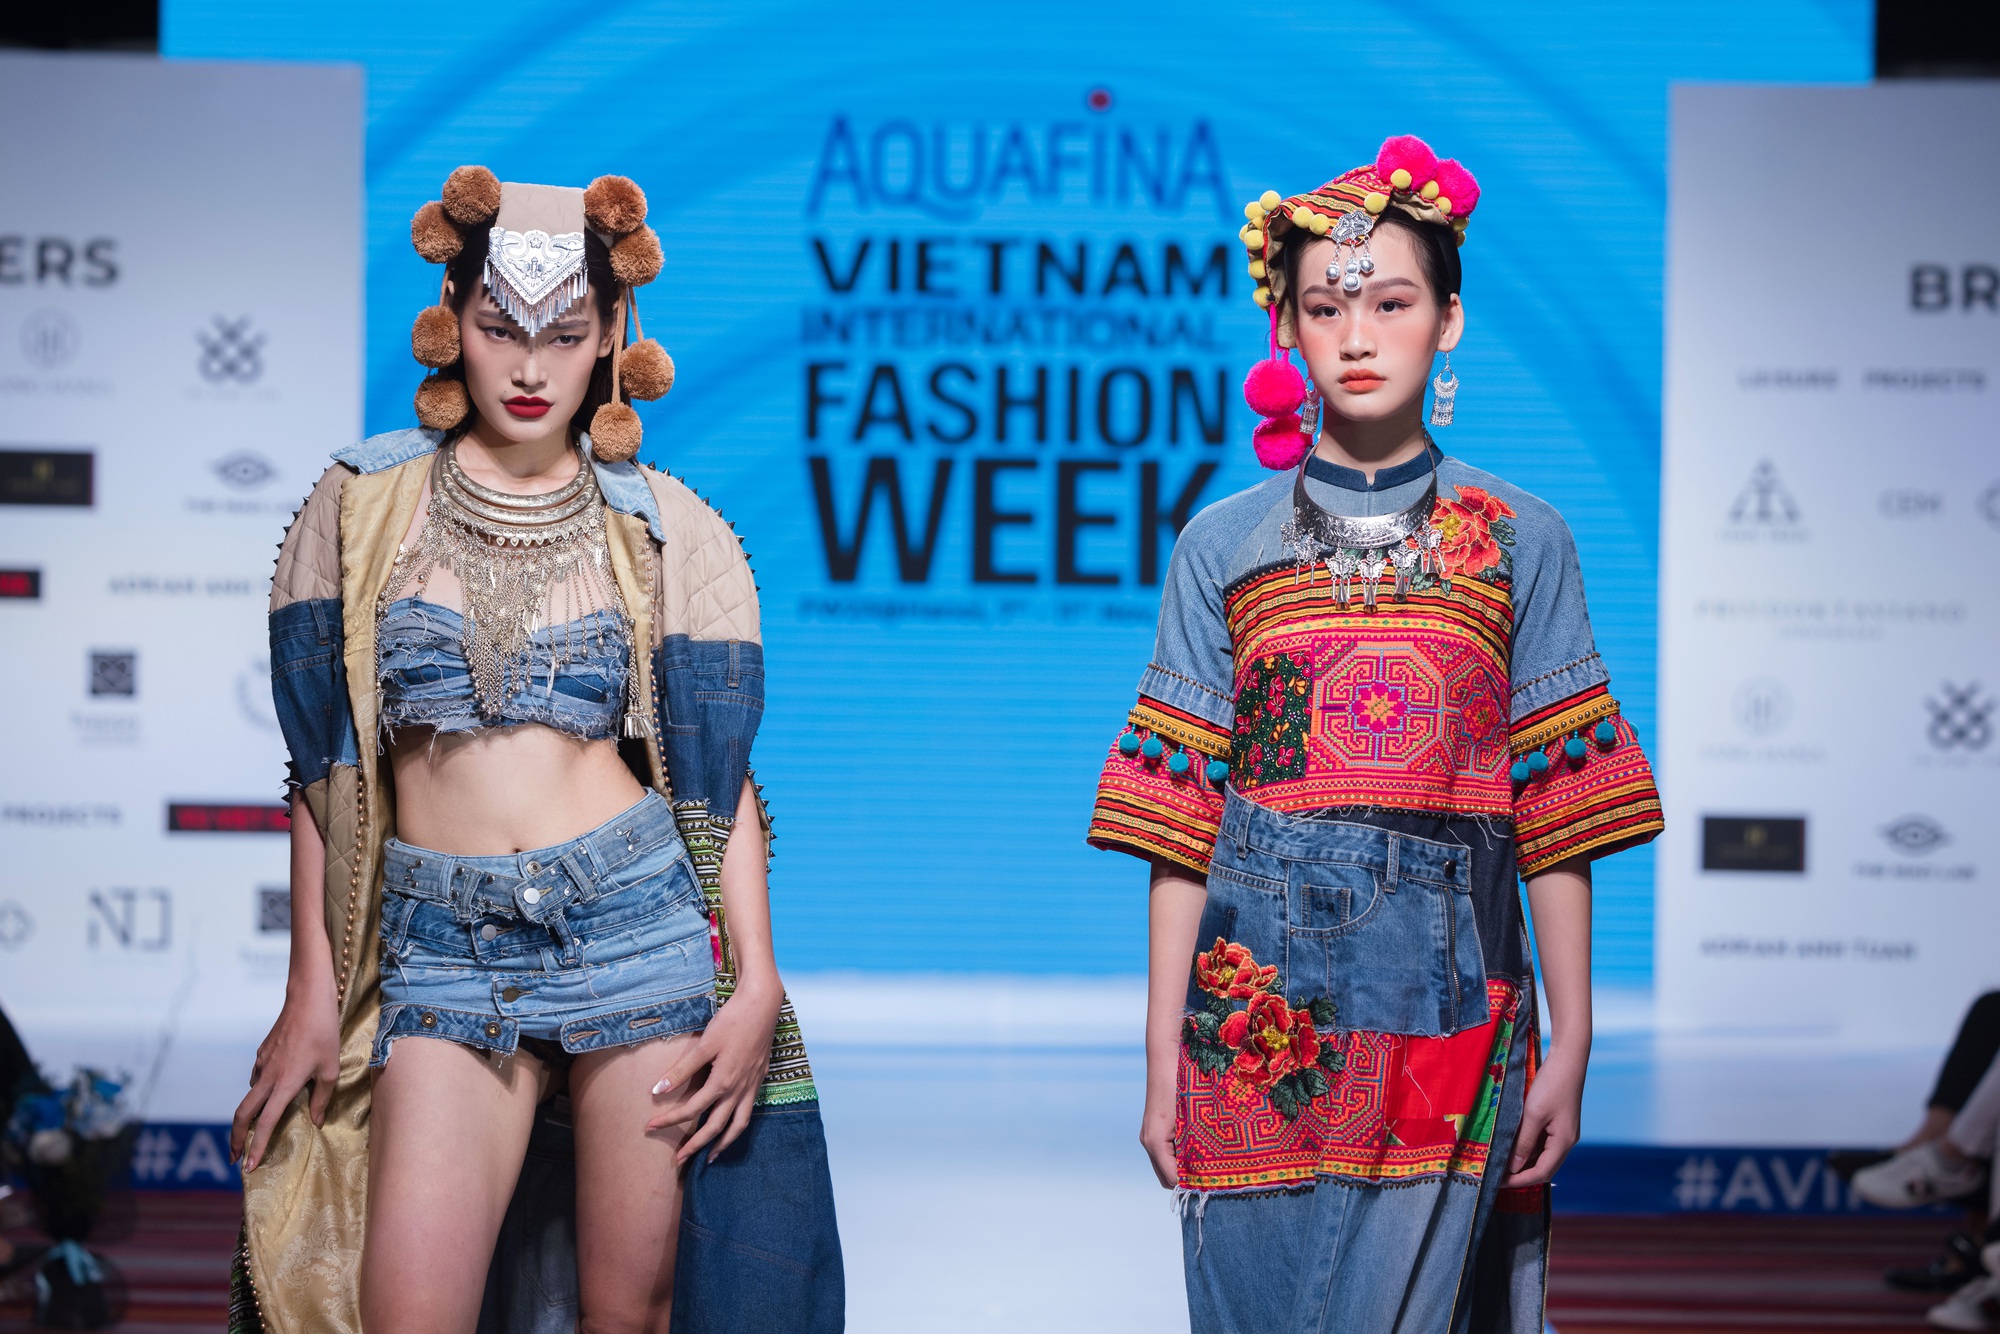 16 nhà thiết kế, thương hiệu sẽ tham dự Aquafina Tuần lễ thời trang Quốc tế Việt Nam - Ảnh 12.